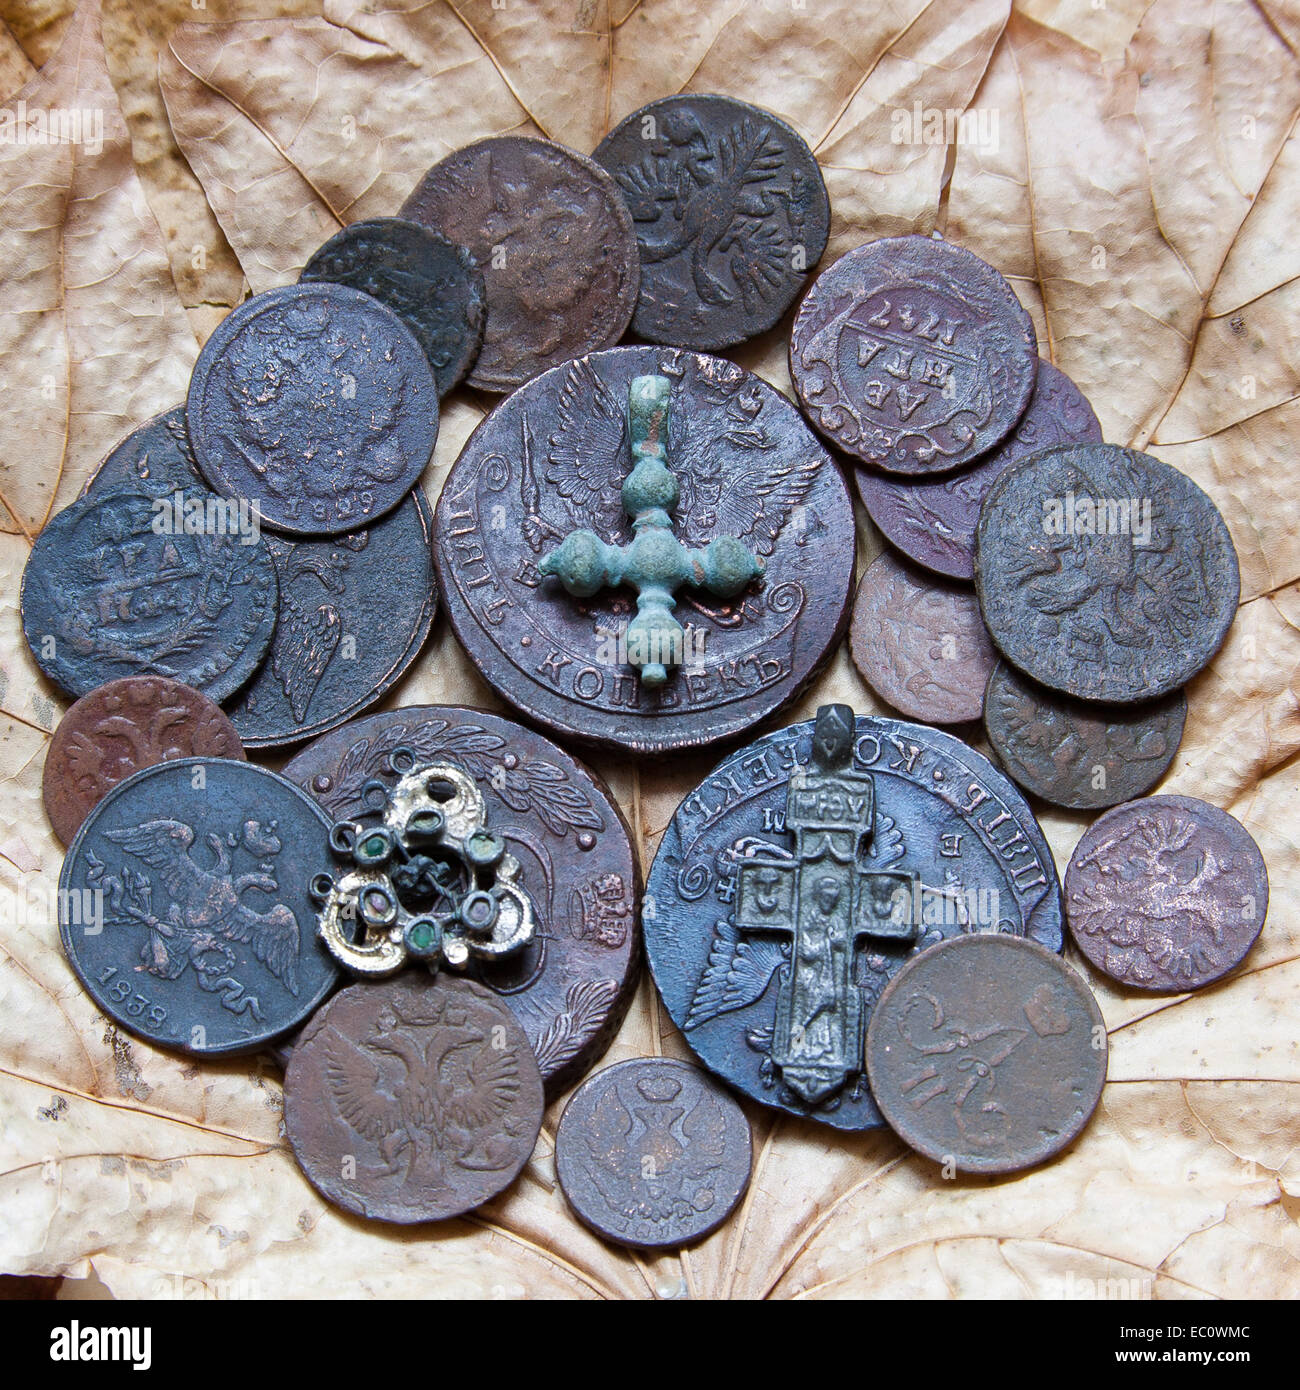 Münzen der Dynastie des Zaren Romanow des 18. und 19. Jahrhunderts. Stockfoto